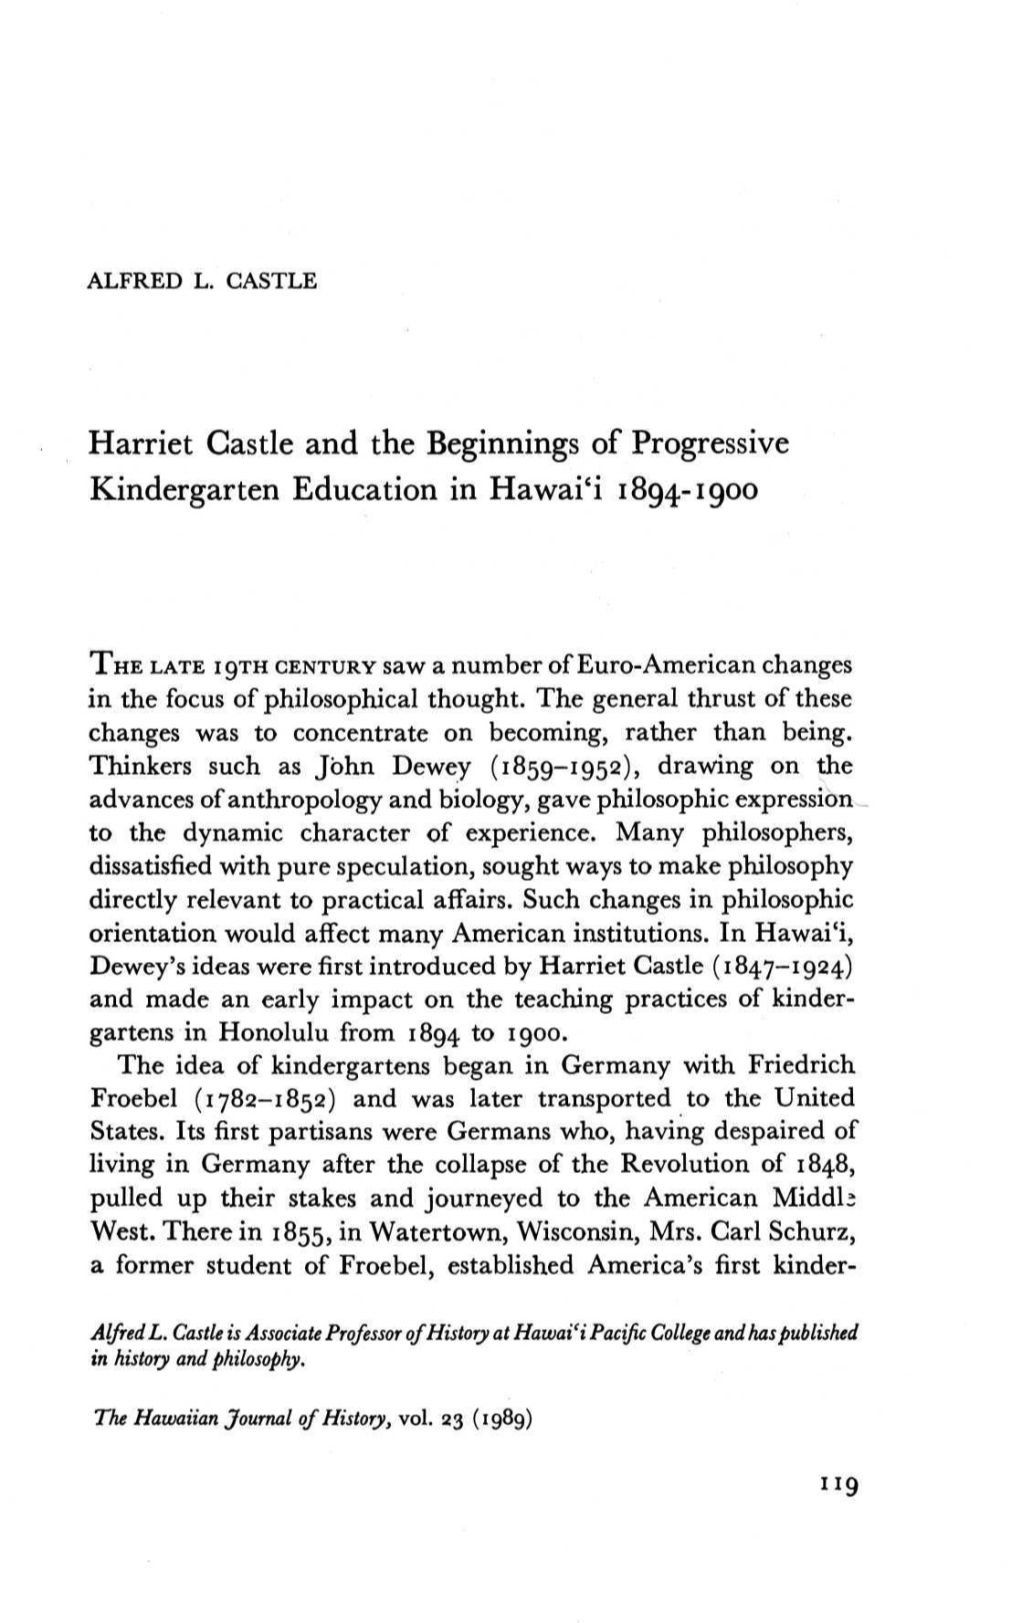 Harriet Castle and the Beginnings of Progressive Kindergarten Education in Hawai'i 1894-1900